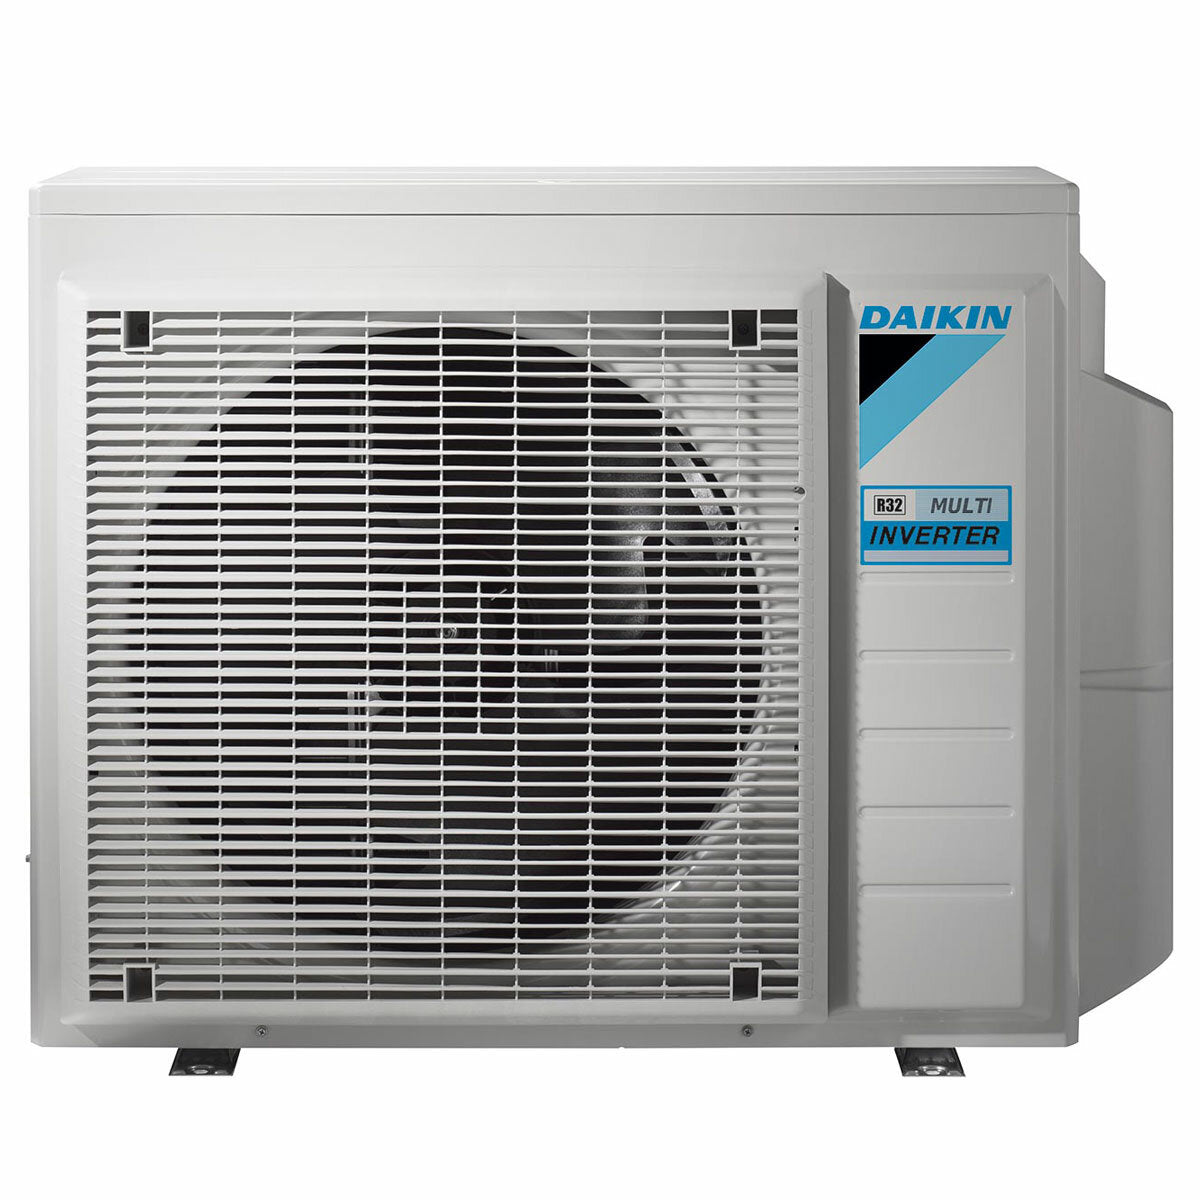 Daikin Emura air conditioner 3 split panels 12000+12000+12000+12000 BTU inverter A++ wifi outdoor unit 7.4 kW Black